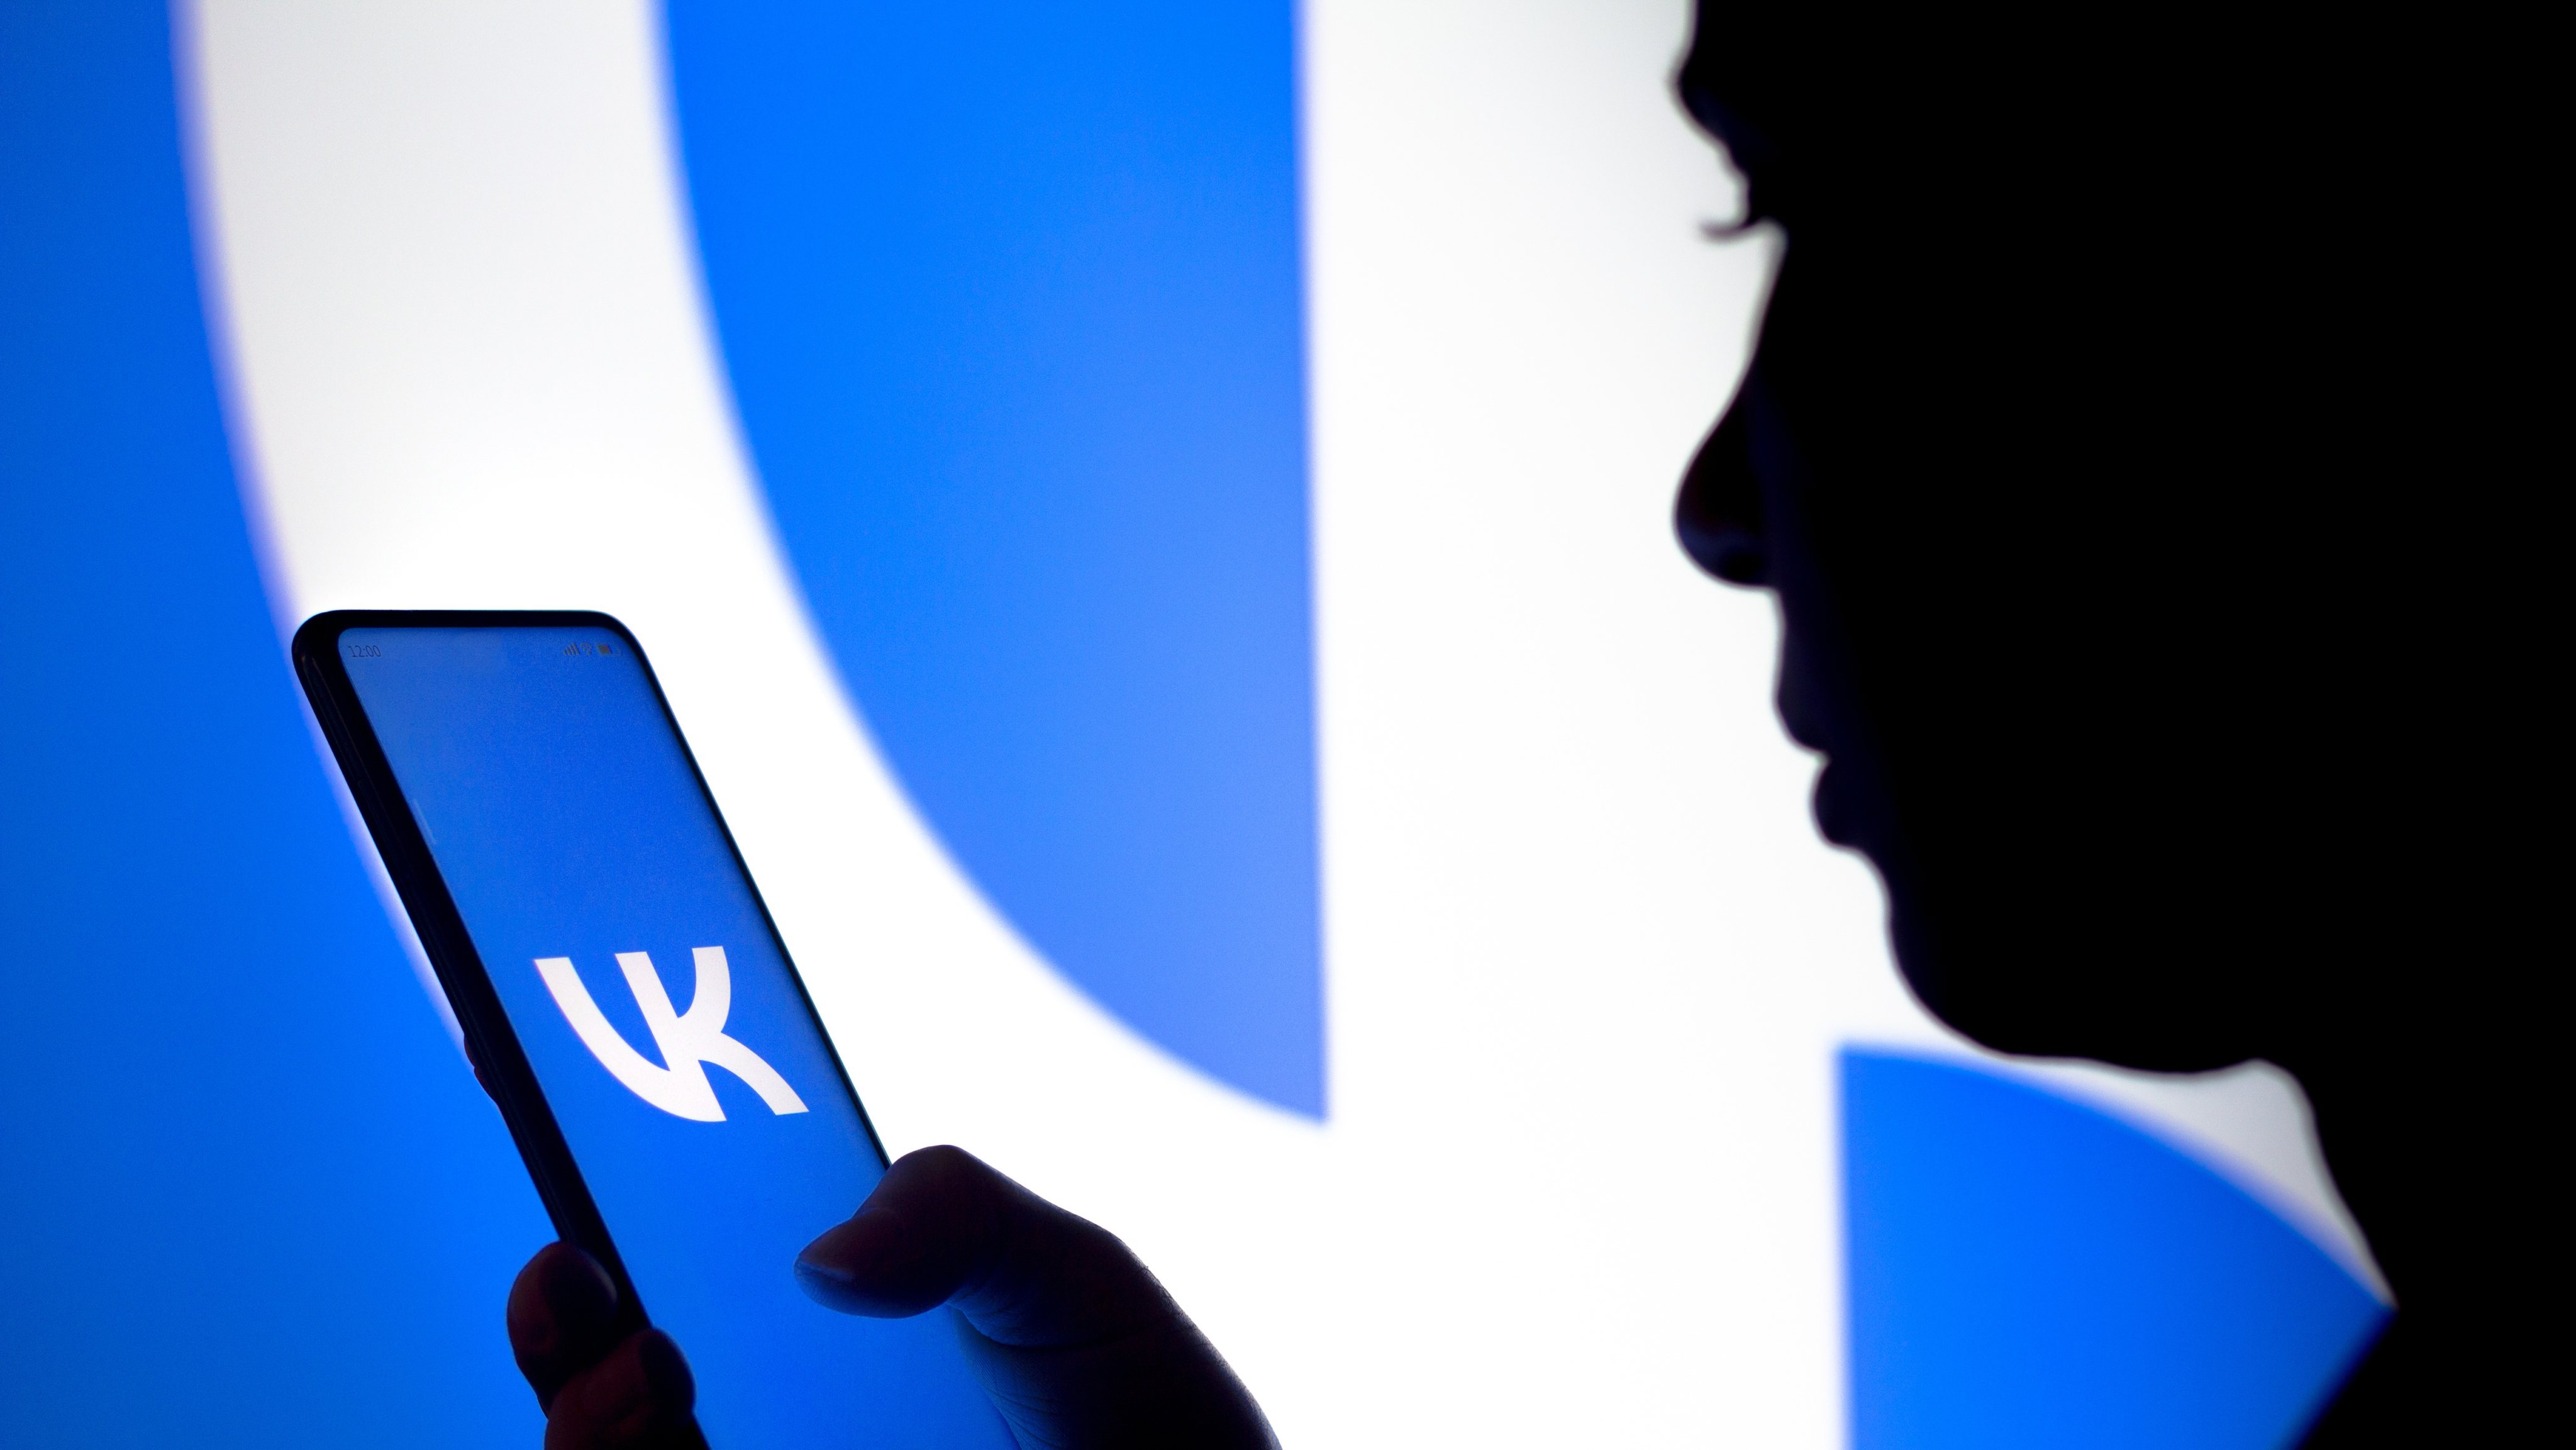 Qué es Vkontakte (VK): la versión rusa de Facebook que ahora está